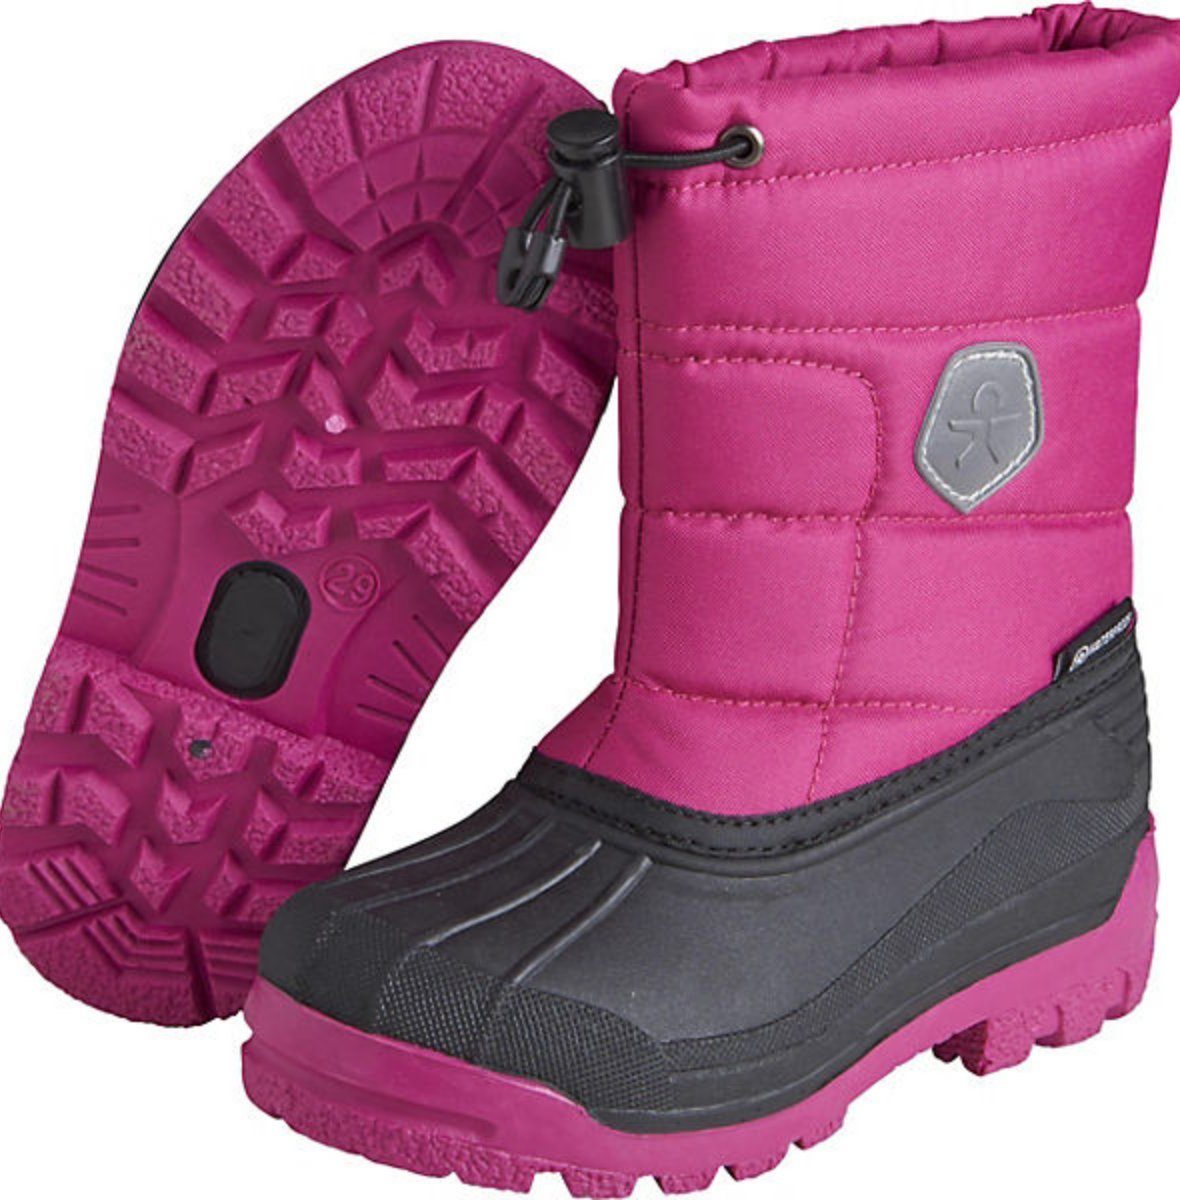 waterproof Fuchsia Boots Winterstiefel Festival COLOR KIDS